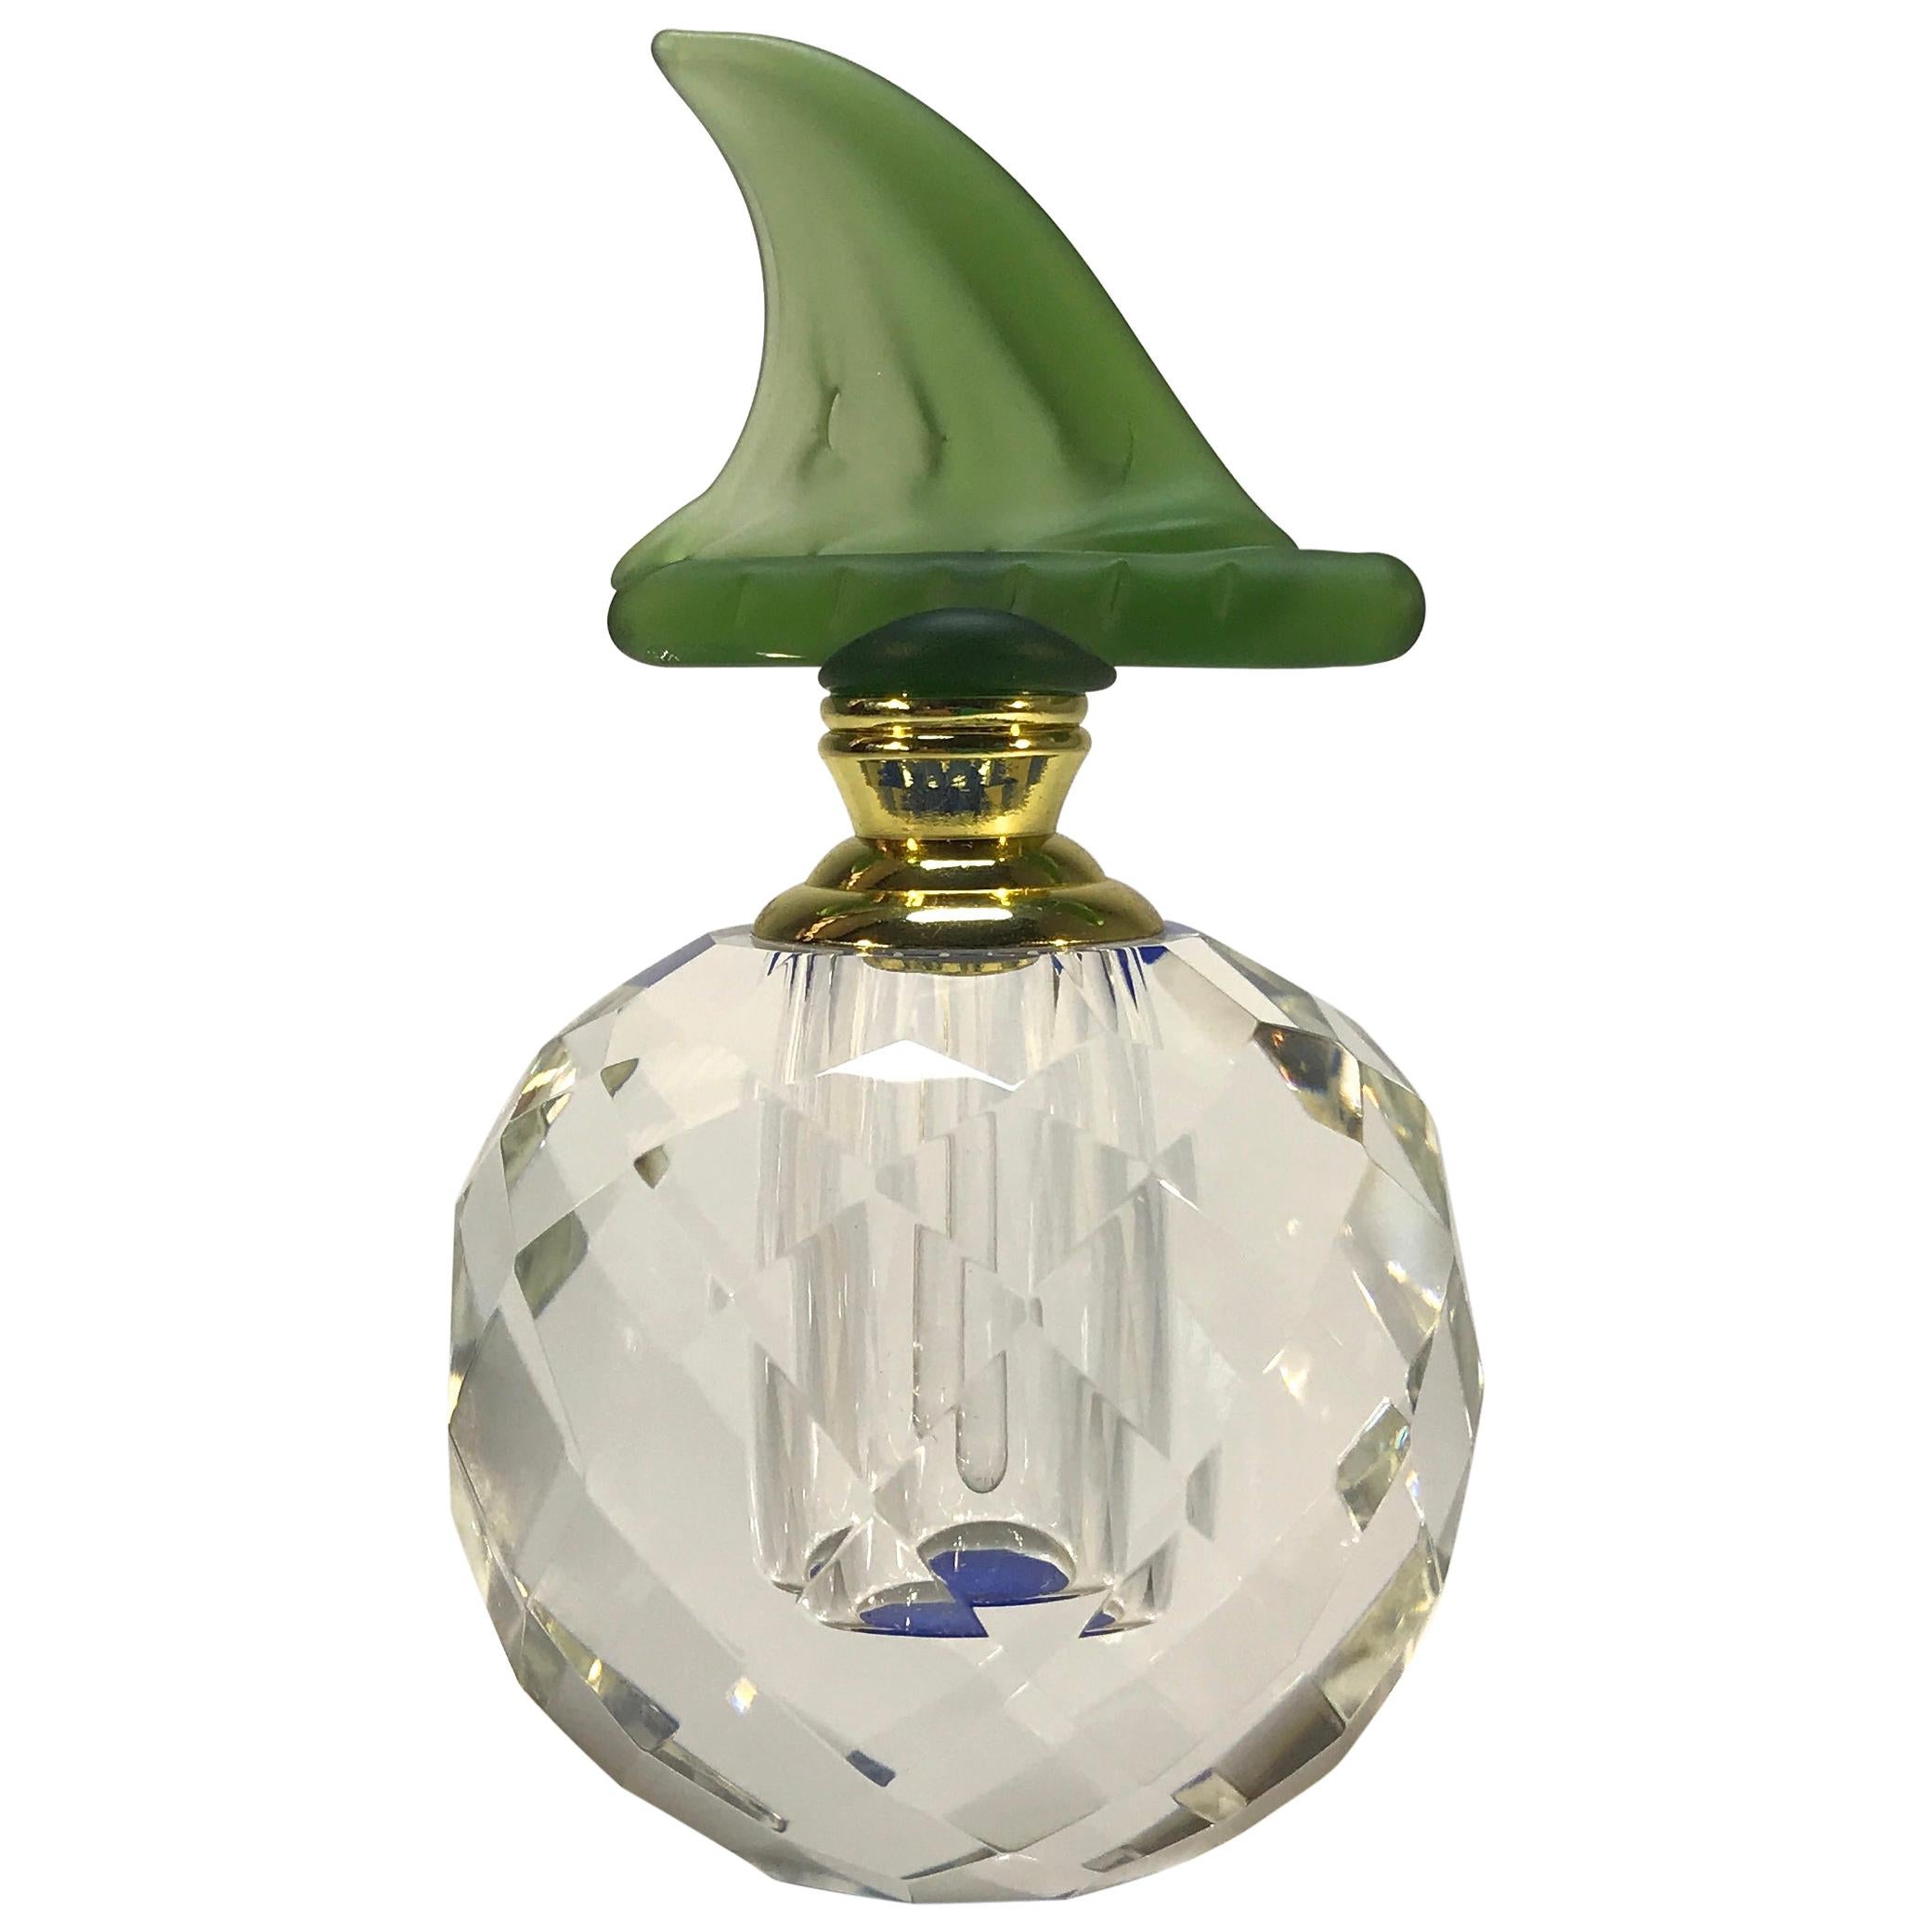 Exquisite Soft Moss Green Páte-de-Verre, Faceted Crystal Perfume Bottle